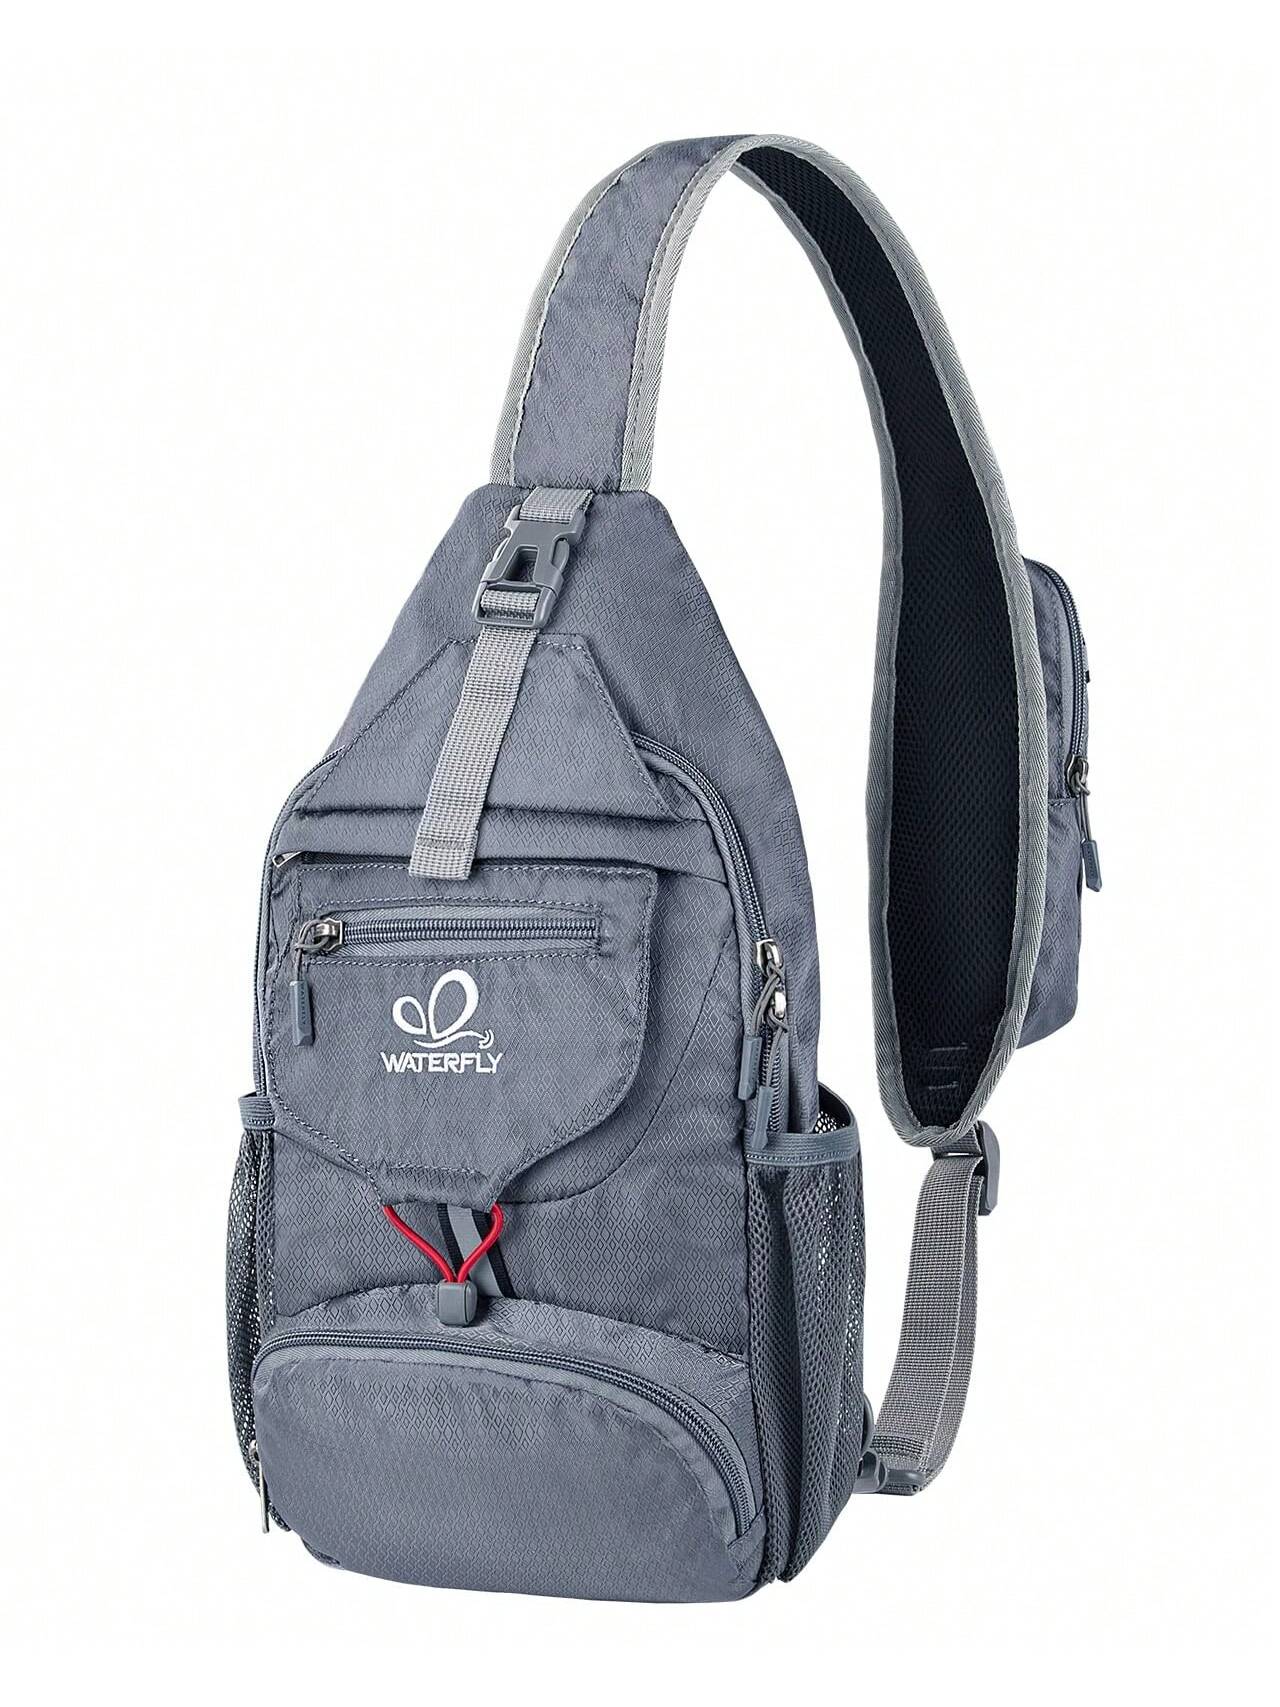 цена WATERFLY Packable Маленький рюкзак через плечо для мужчин и женщин Складная сумка через плечо на груди Дневной рюкзак для пеших прогулок и путешествий, серебристо-серый